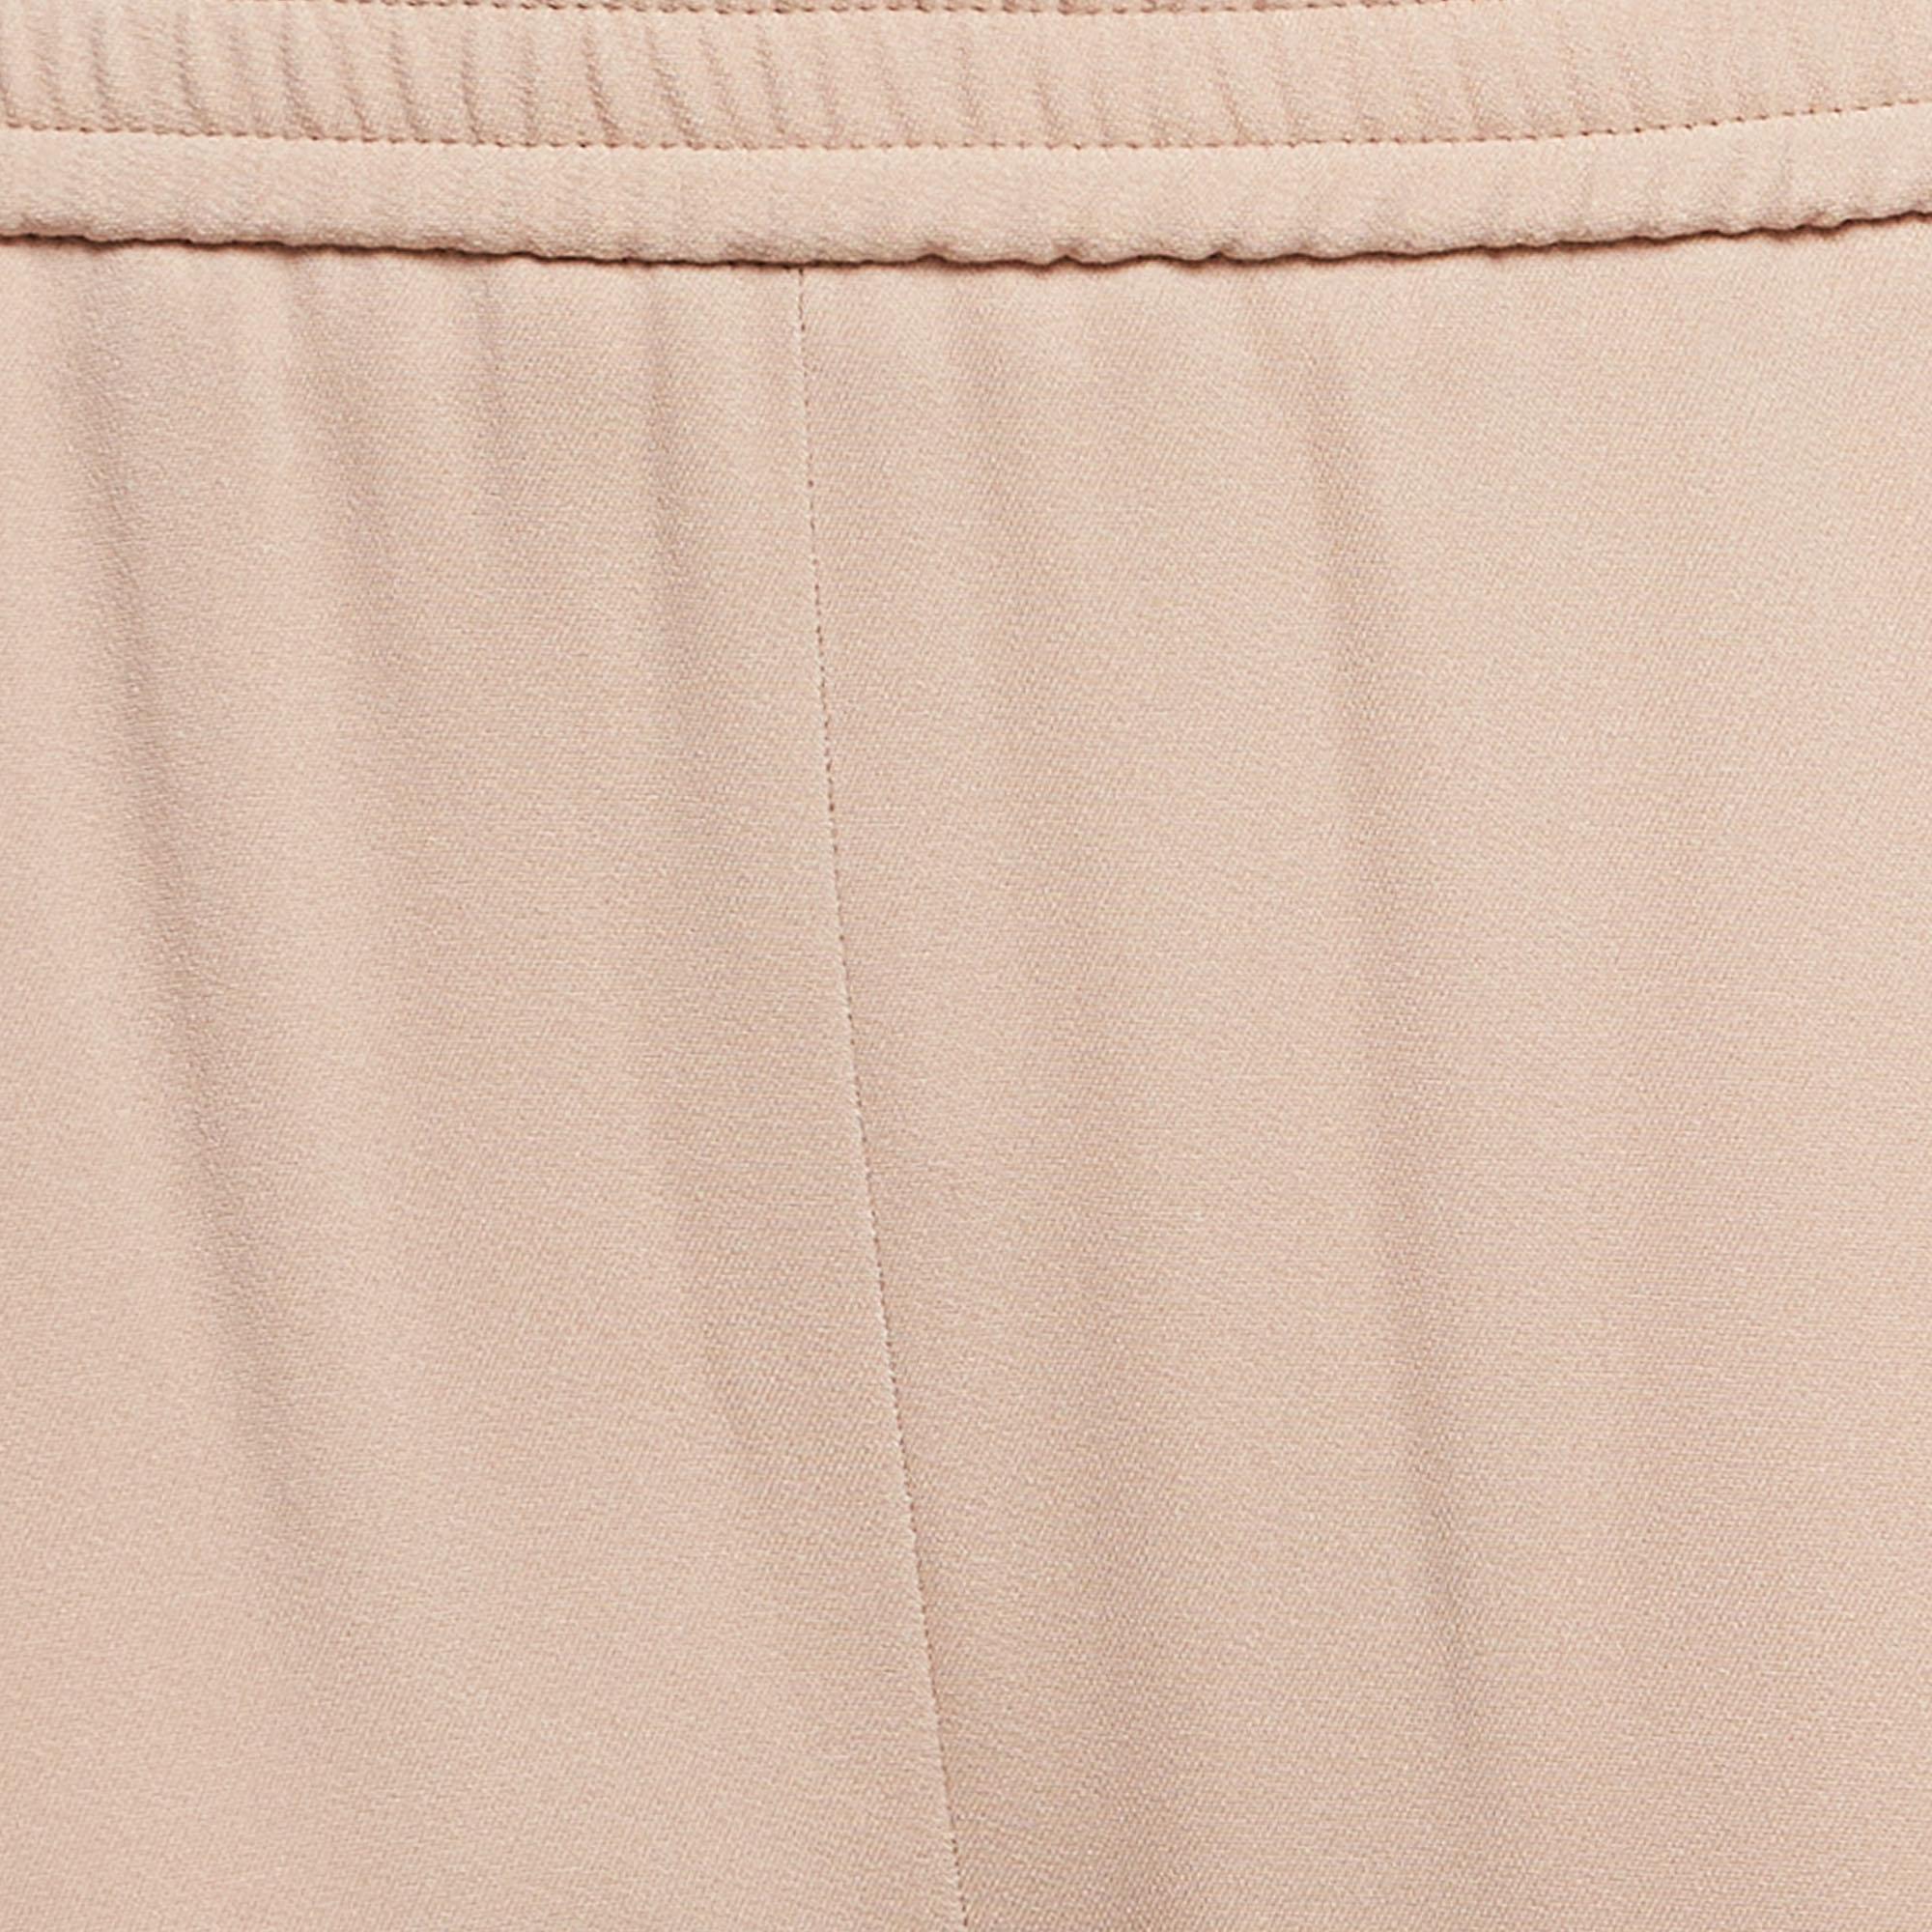 Stella McCartney Pink Stretch Crepe Tamara Trousers S In New Condition For Sale In Dubai, Al Qouz 2